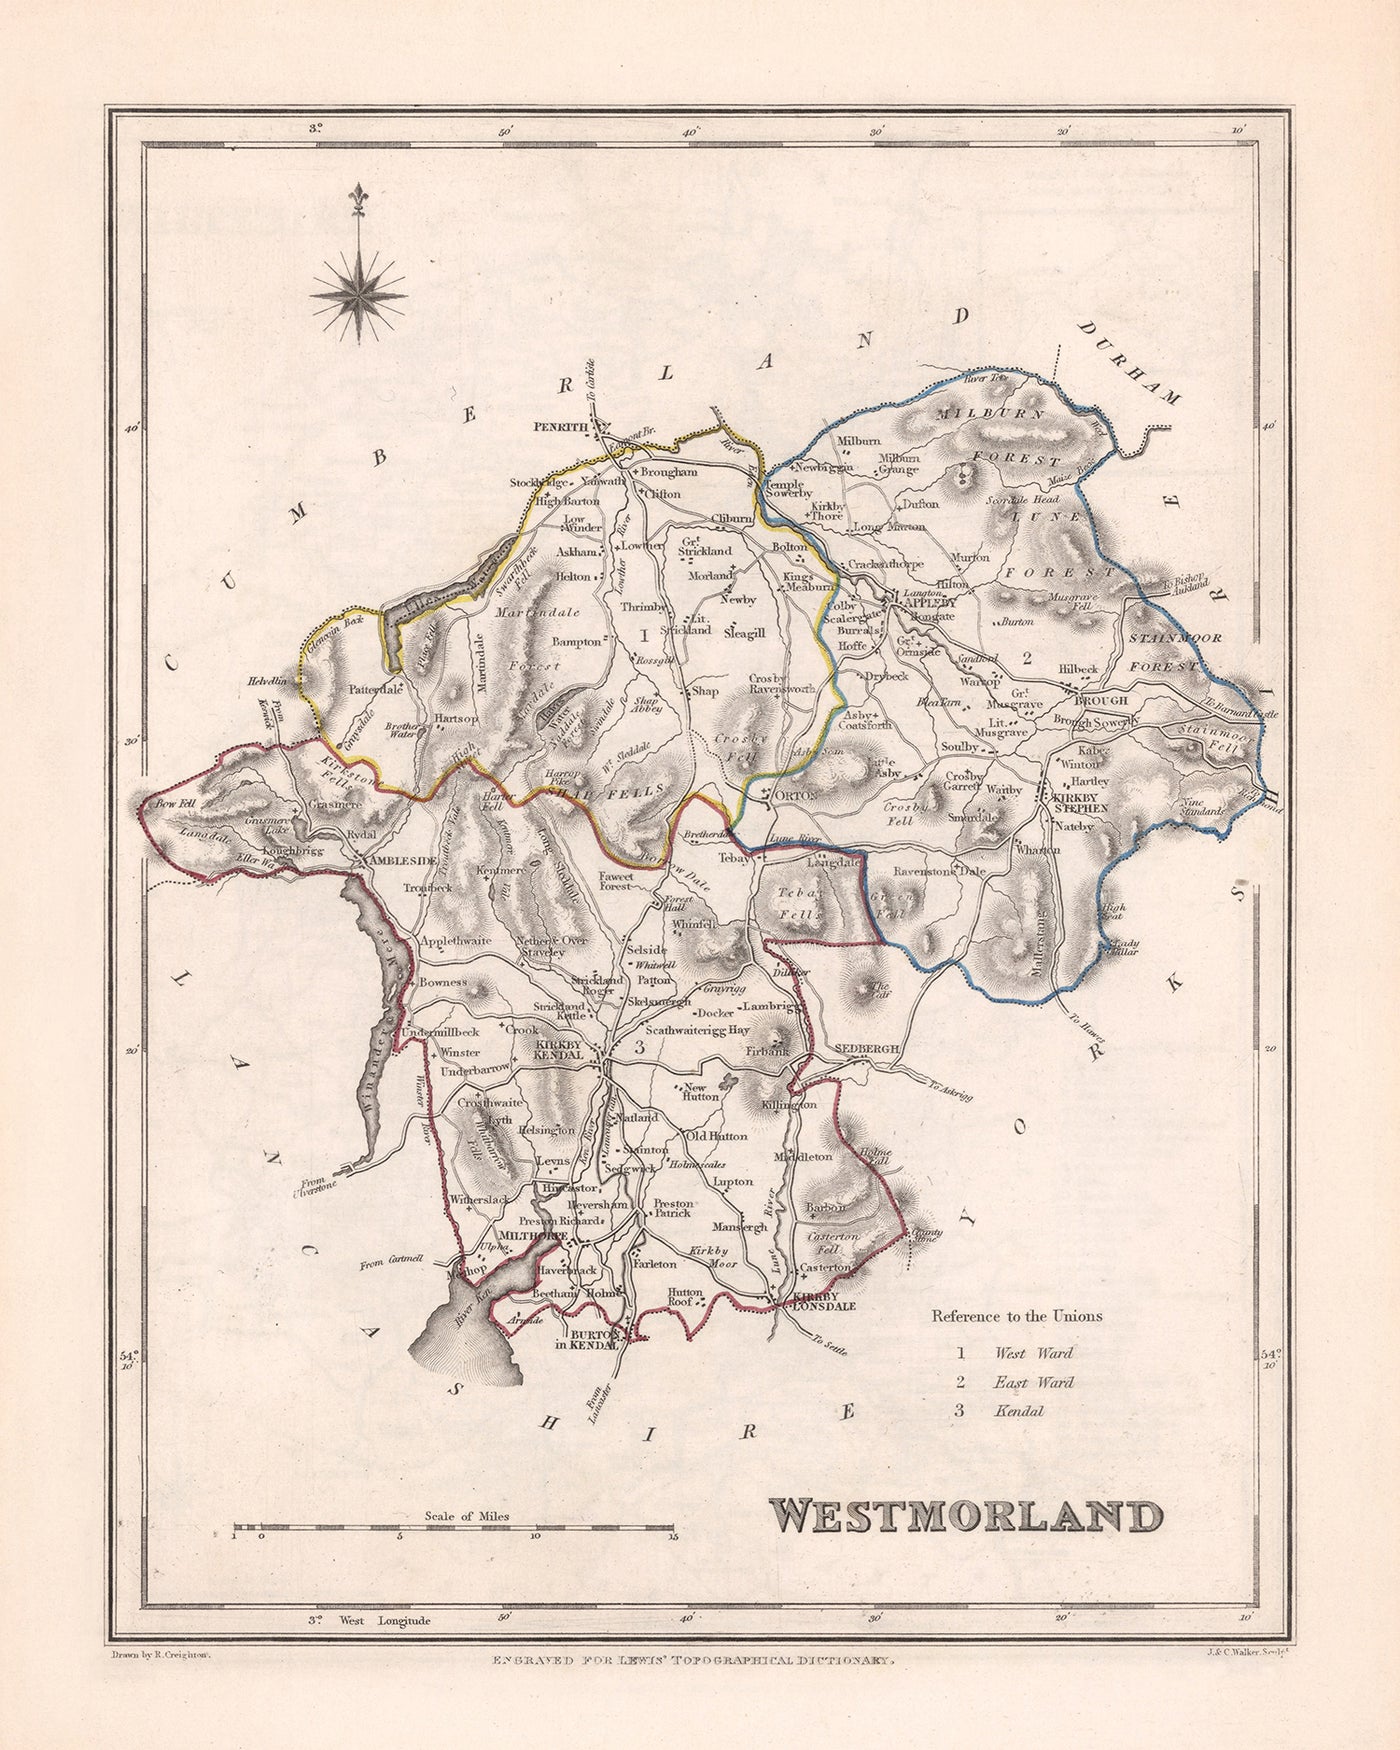 Alte Karte von Westmorland von Samuel Lewis, 1844: Appleby, Kendal, Kirkby Stephen, Brough, Lake District